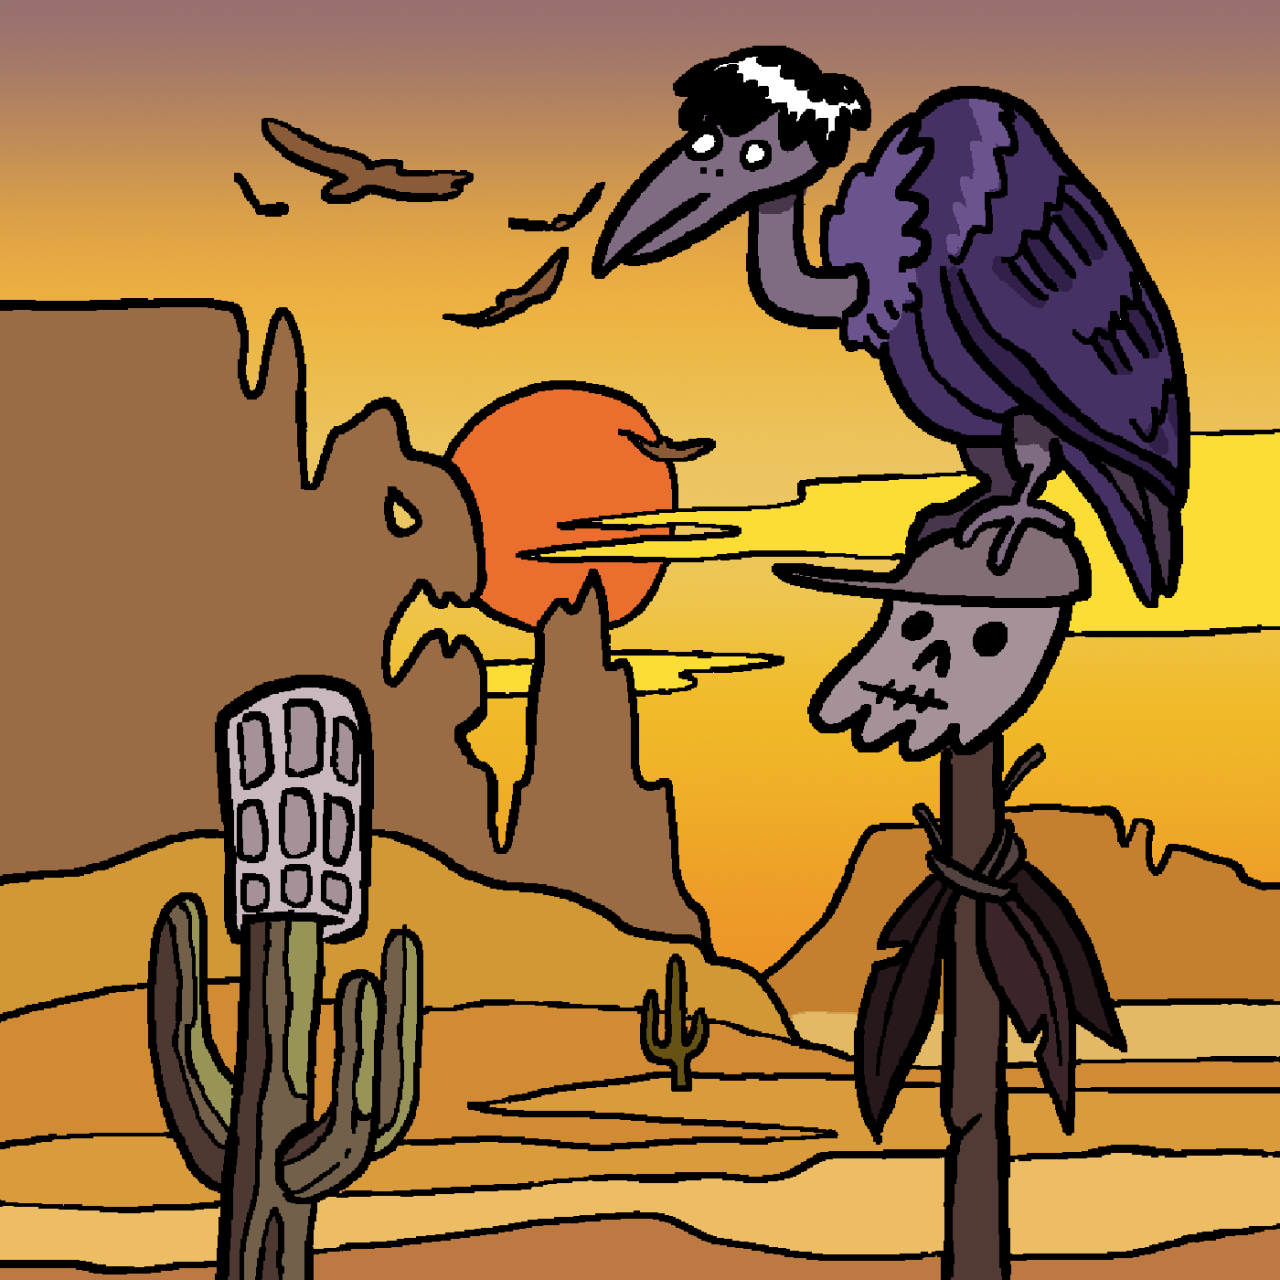 Eine selbst gezeichnete Version des Original-Covers von Folge 112 "Schlucht der Dämonen". Jeff sitzt als Geier auf einem Totenschädel von Tim. Daneben ist Marcus Kopf auf einem Kaktus zu sehen, während im Hintergrund die Sonne untergeht.